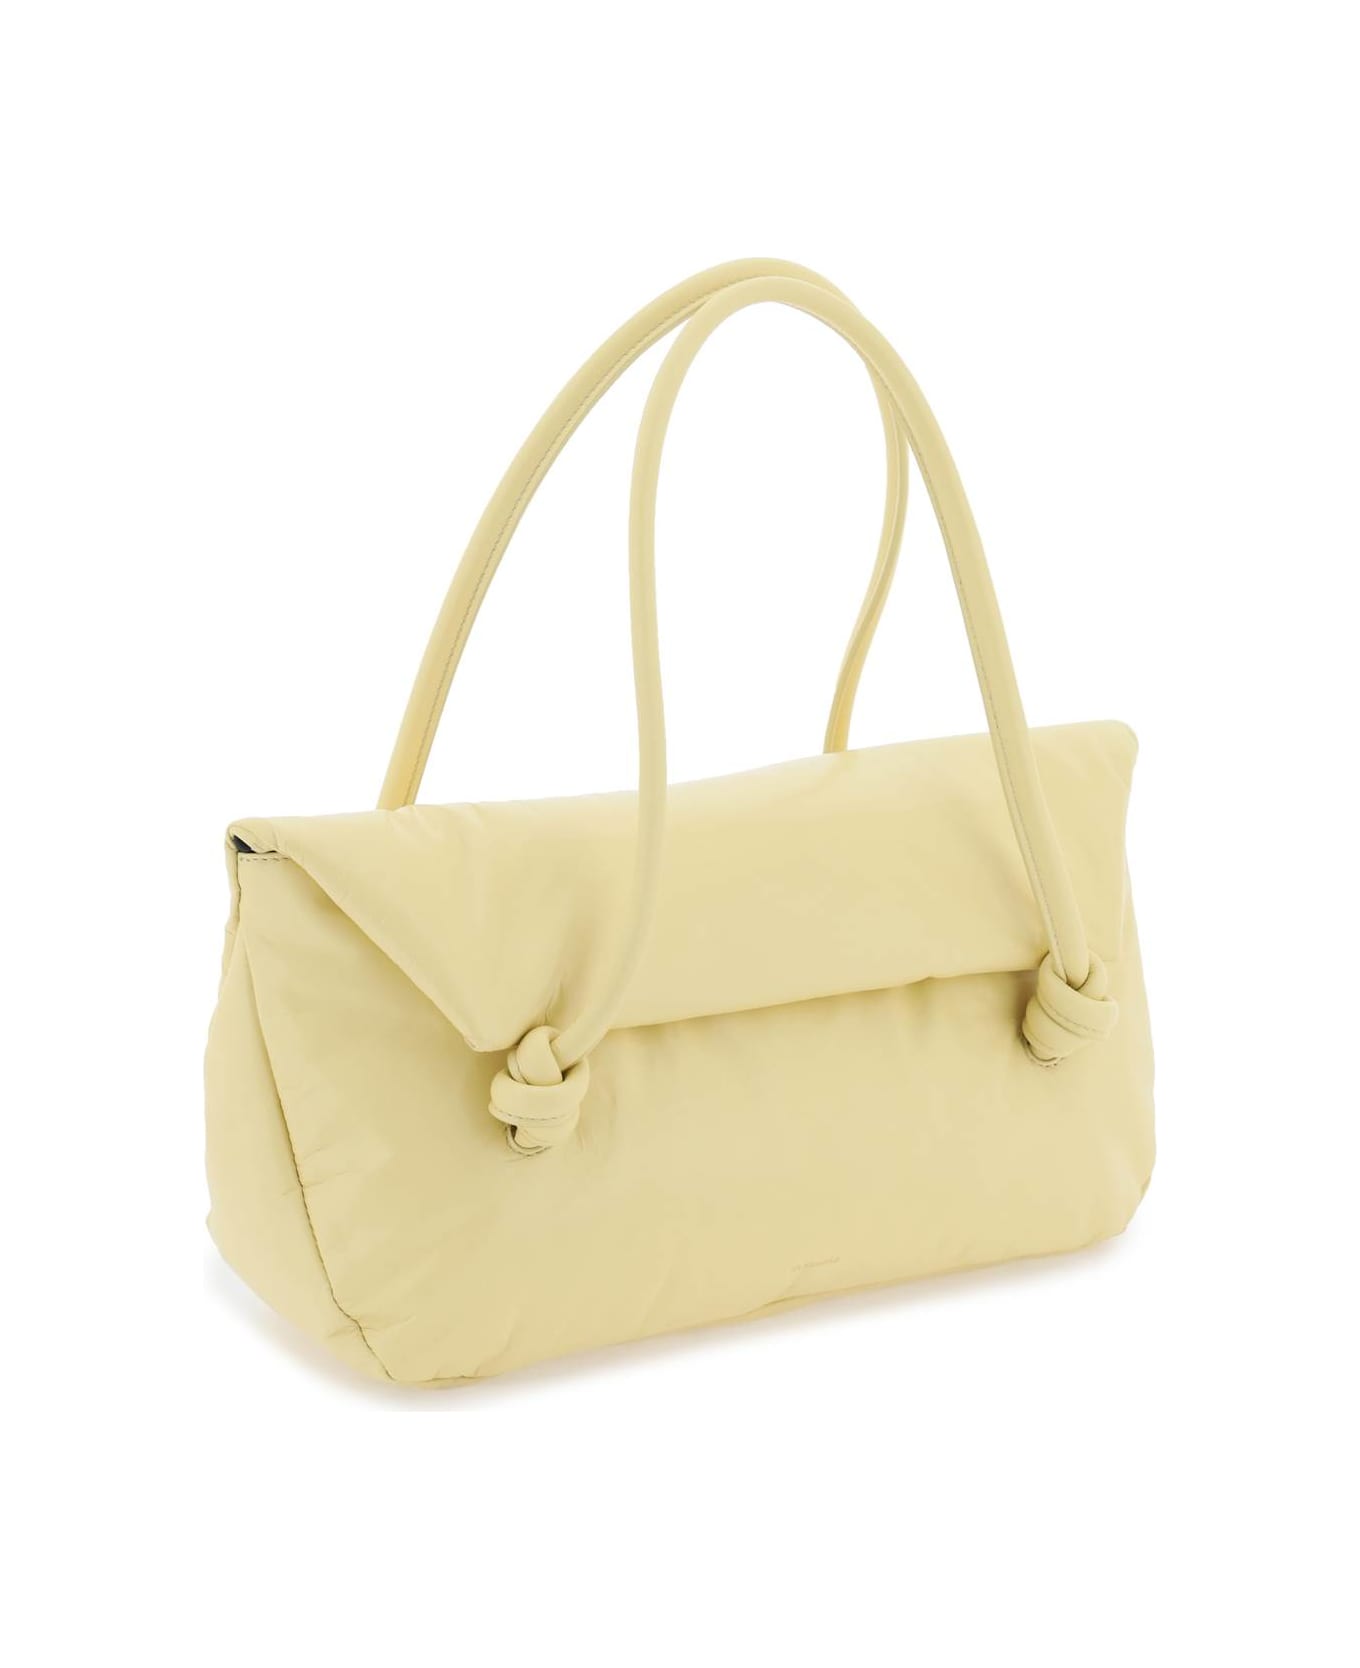 Jil Sander Yellow Leather Bag - OAK (Yellow)